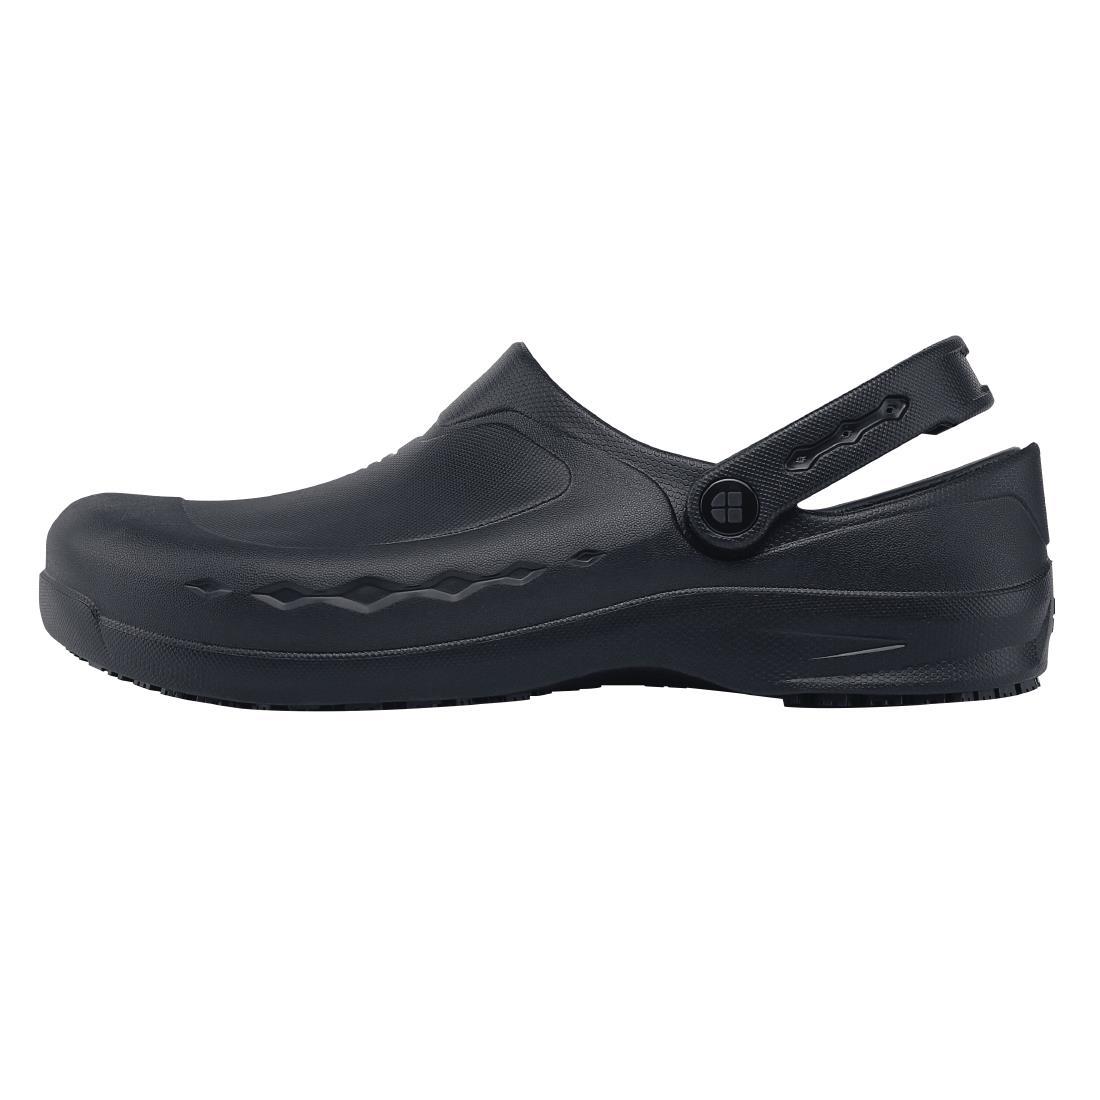 Shoes for Crews Zinc Clogs Black Size 41 - BB569-41  - 1